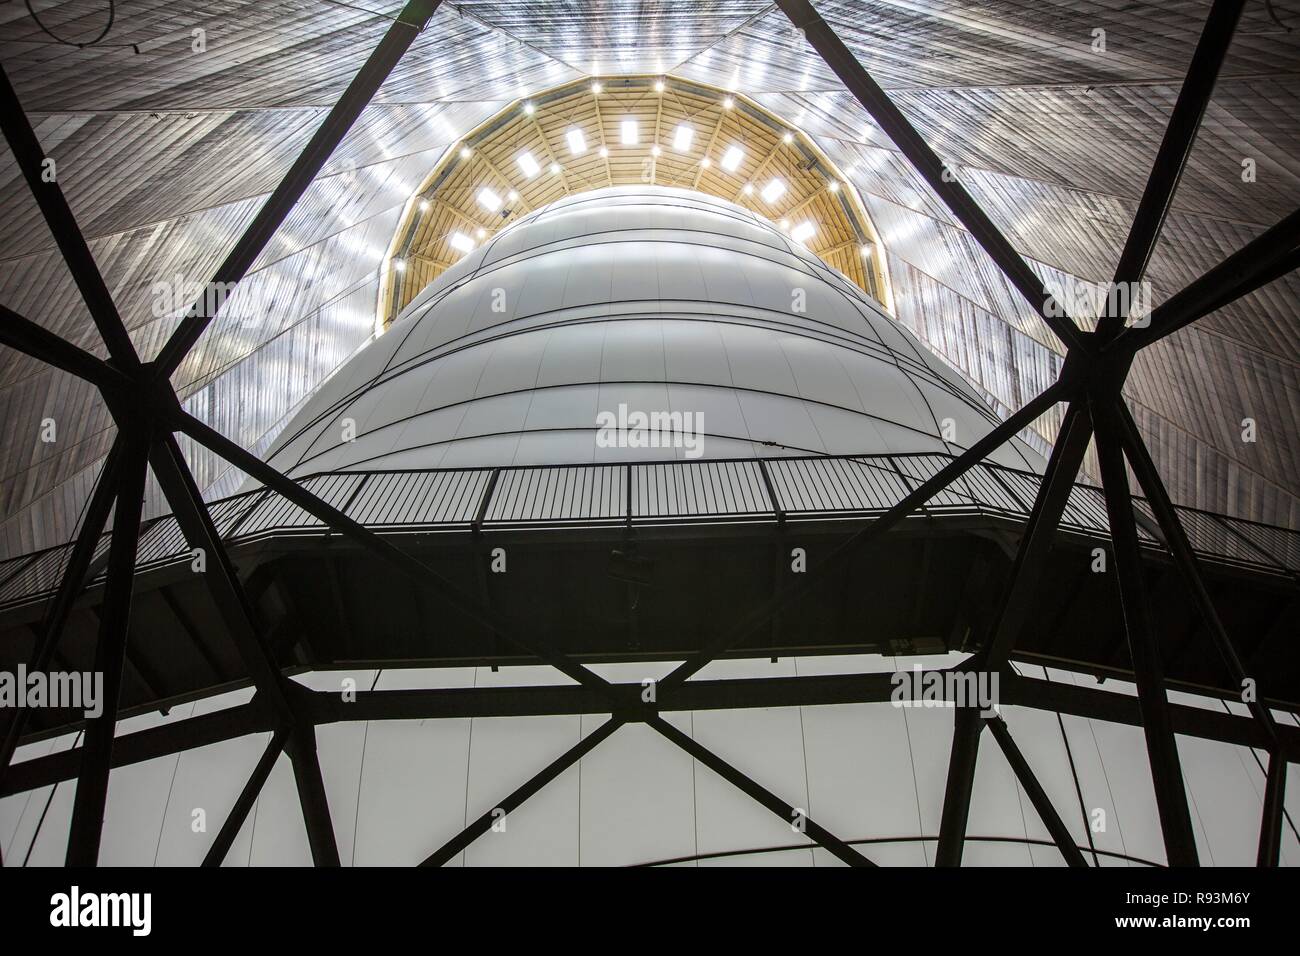 L'installation de Christo, 90 mètres de haut, 50 mètres de large, composée de 20 350 mètres carrés de tissus et de 4500 mètres de corde, Banque D'Images